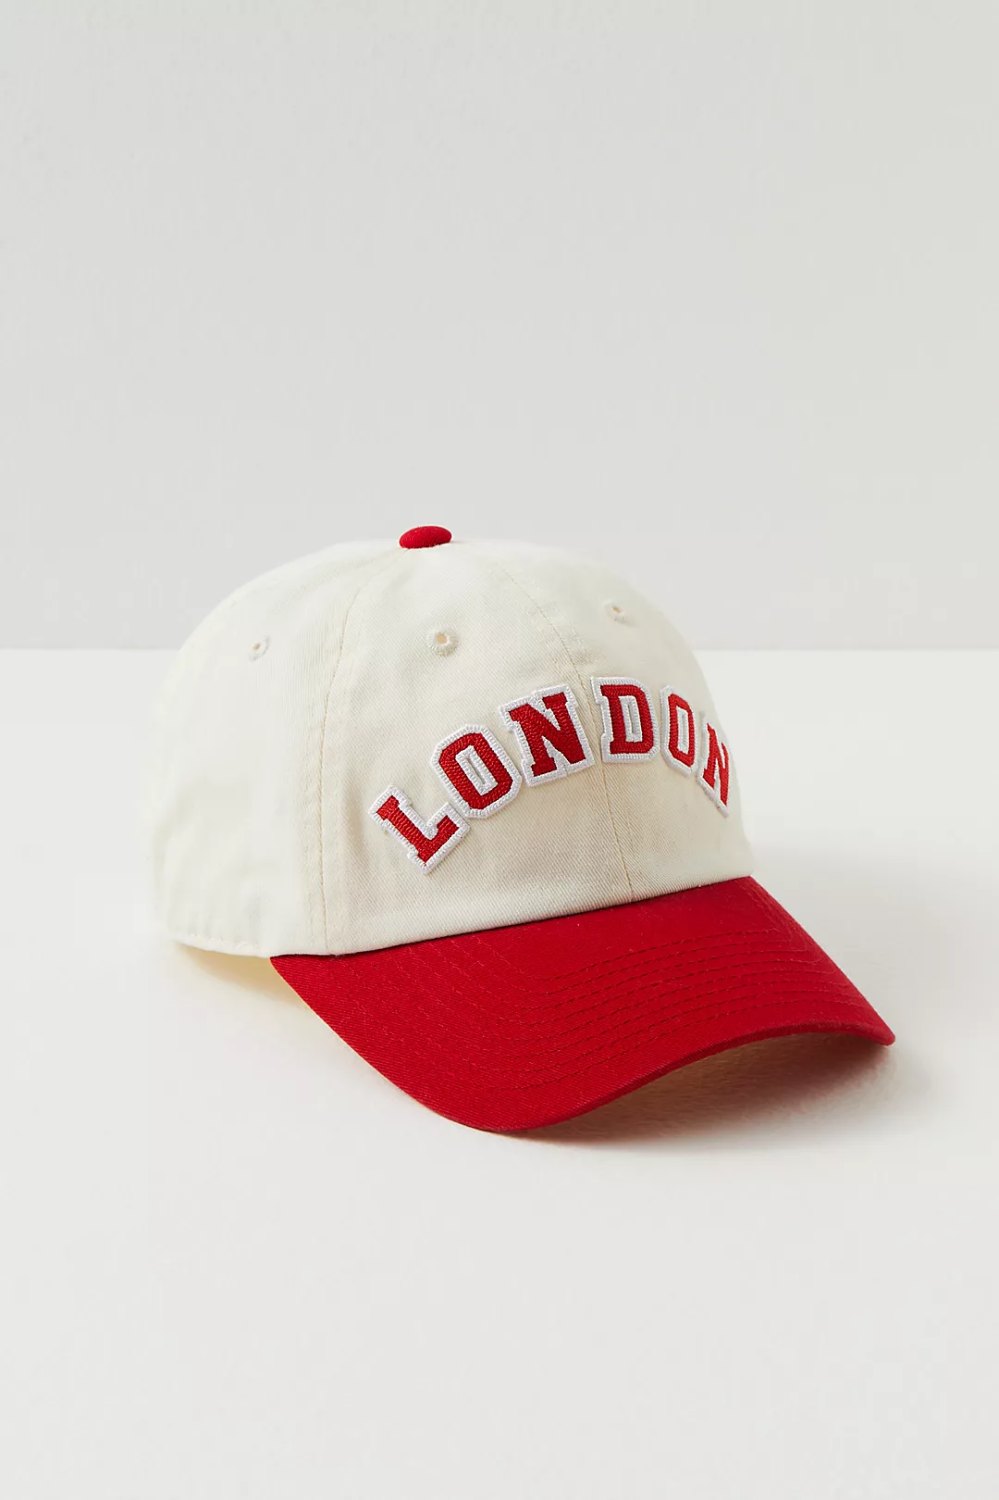 Baseball cap from London